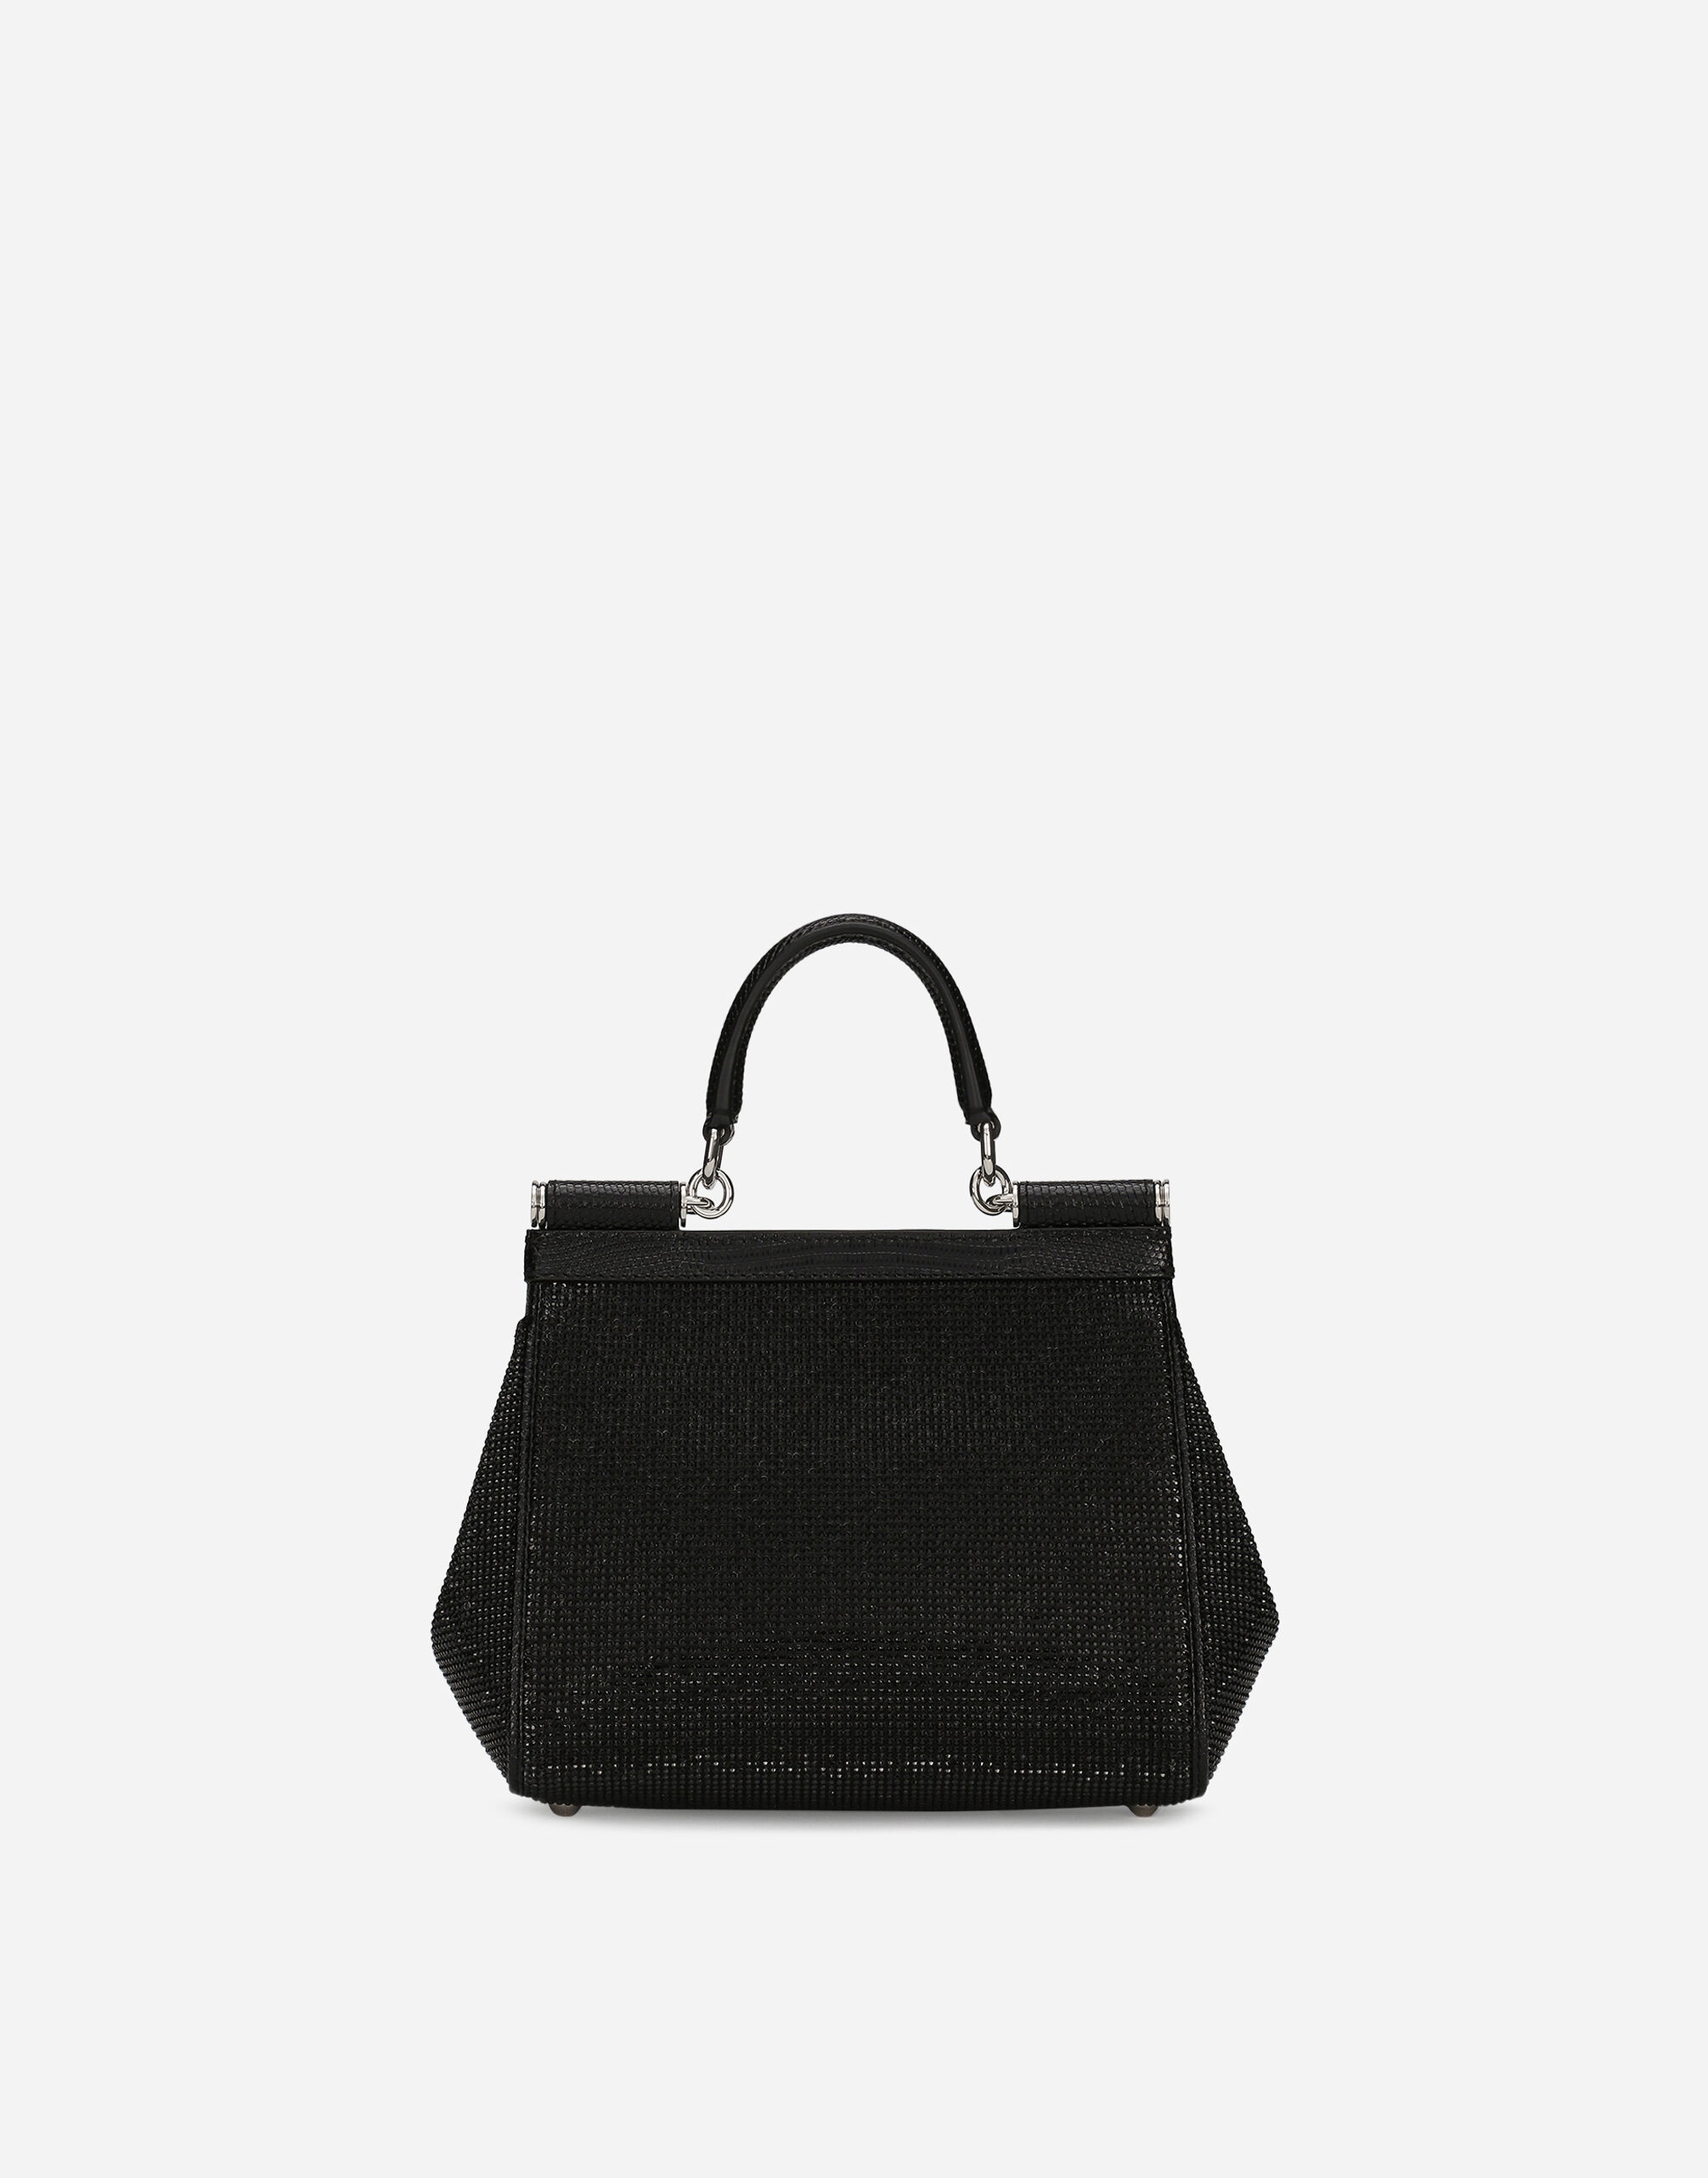 Medium Sicily handbag - 4